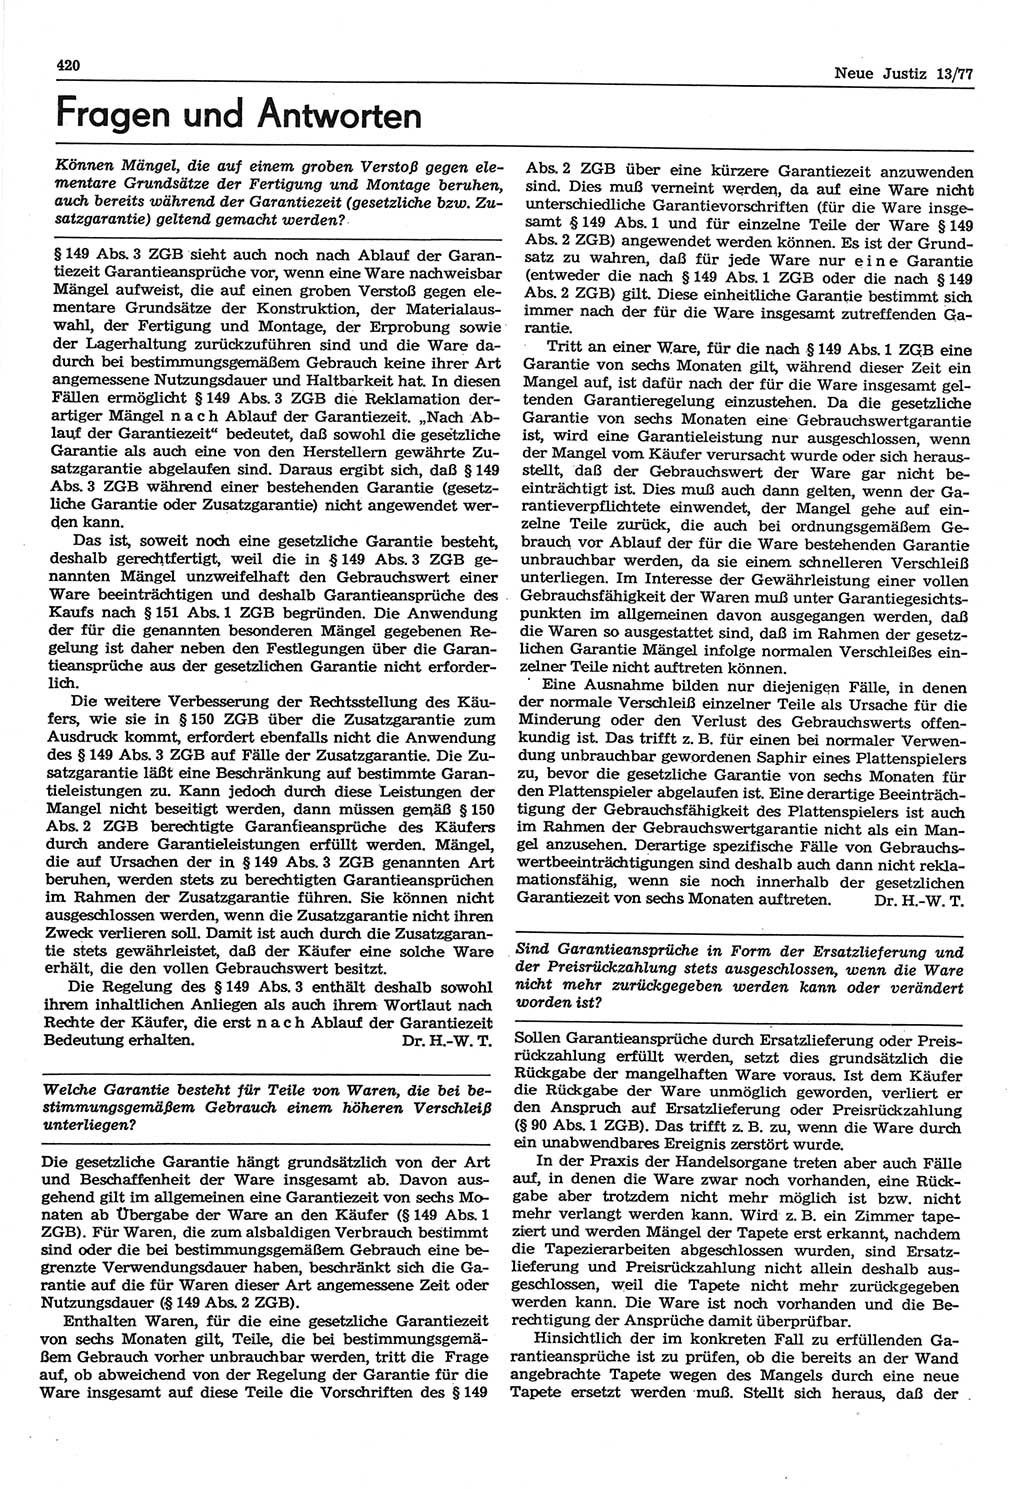 Neue Justiz (NJ), Zeitschrift für Recht und Rechtswissenschaft-Zeitschrift, sozialistisches Recht und Gesetzlichkeit, 31. Jahrgang 1977, Seite 420 (NJ DDR 1977, S. 420)